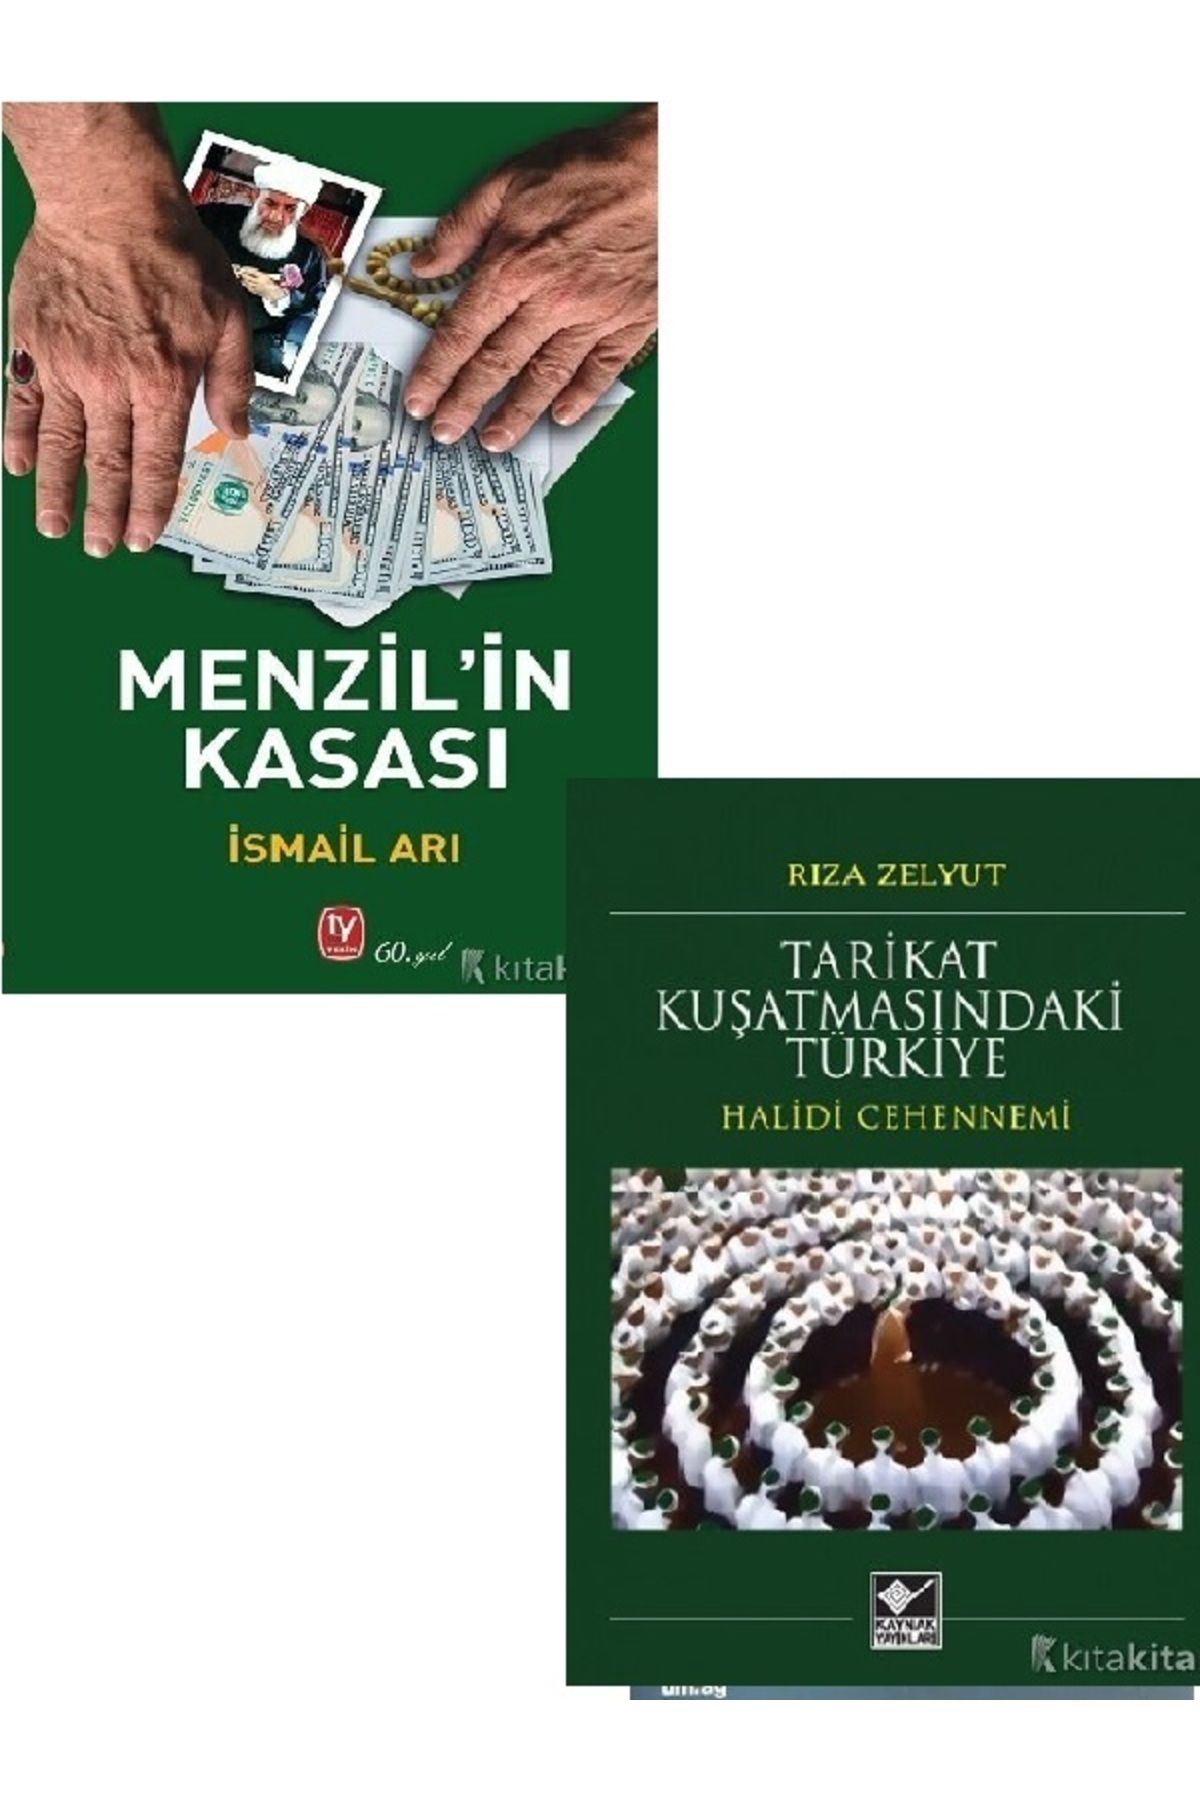 Kronik Kitap Menzil’in Kasası - Tarikat Kuşatmasındaki Türkiye - Rıza Zelyut - İsmail Arı 2 KİTAP SET